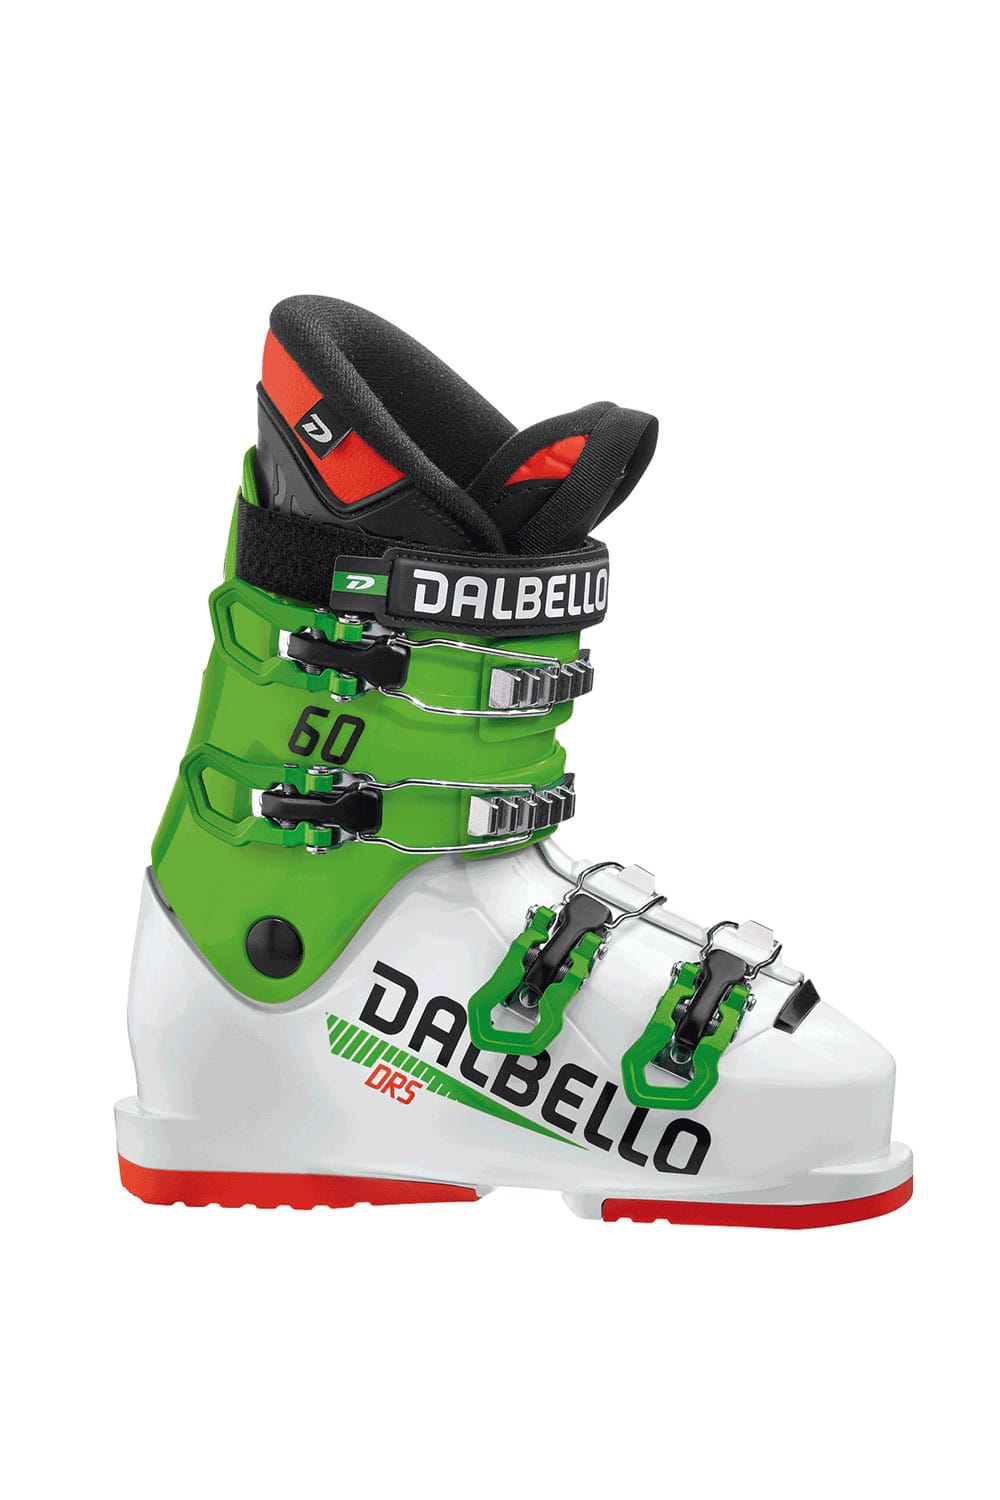 달벨로 주니어 부츠 디알에스 60  DALBELLO DRS 60(190-225)WHITE/RACE GREEN_BVDB902WE